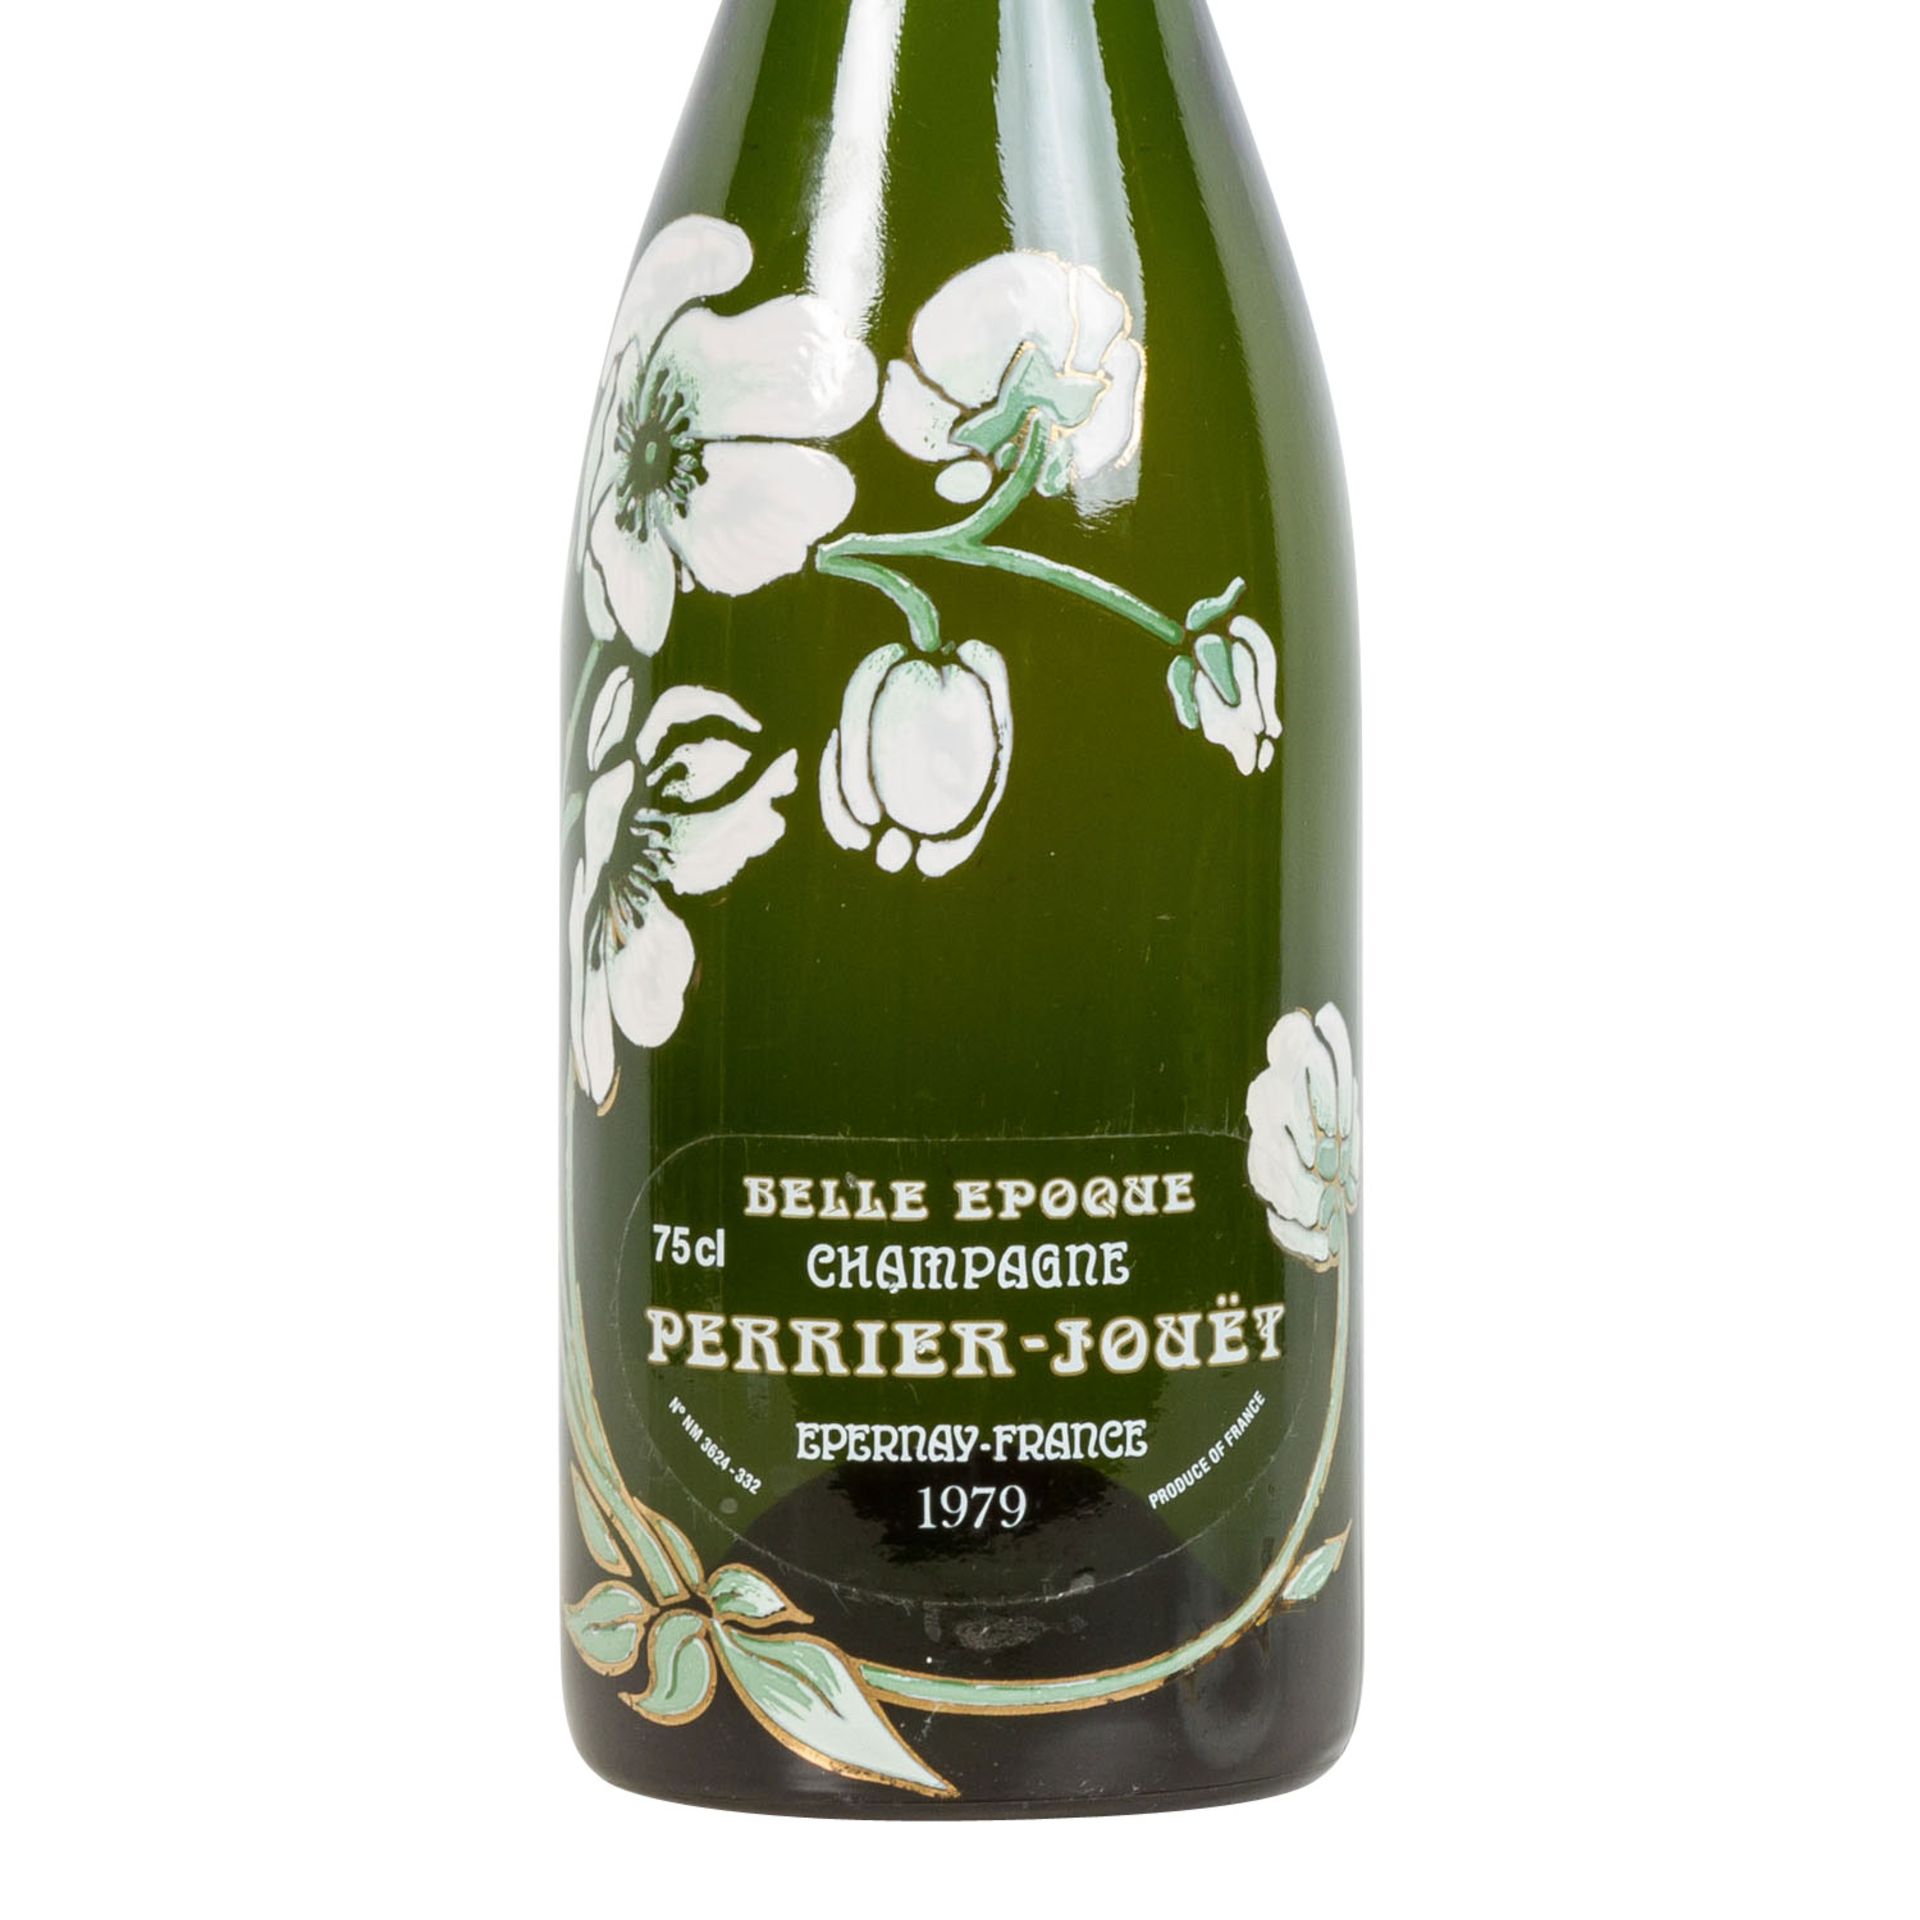 PERRIER-JOUET Champagner 'Belle Epoque' 1979,Champagne, Frankreich, Millésimé, 12% Vol., 750ml, - Bild 2 aus 2